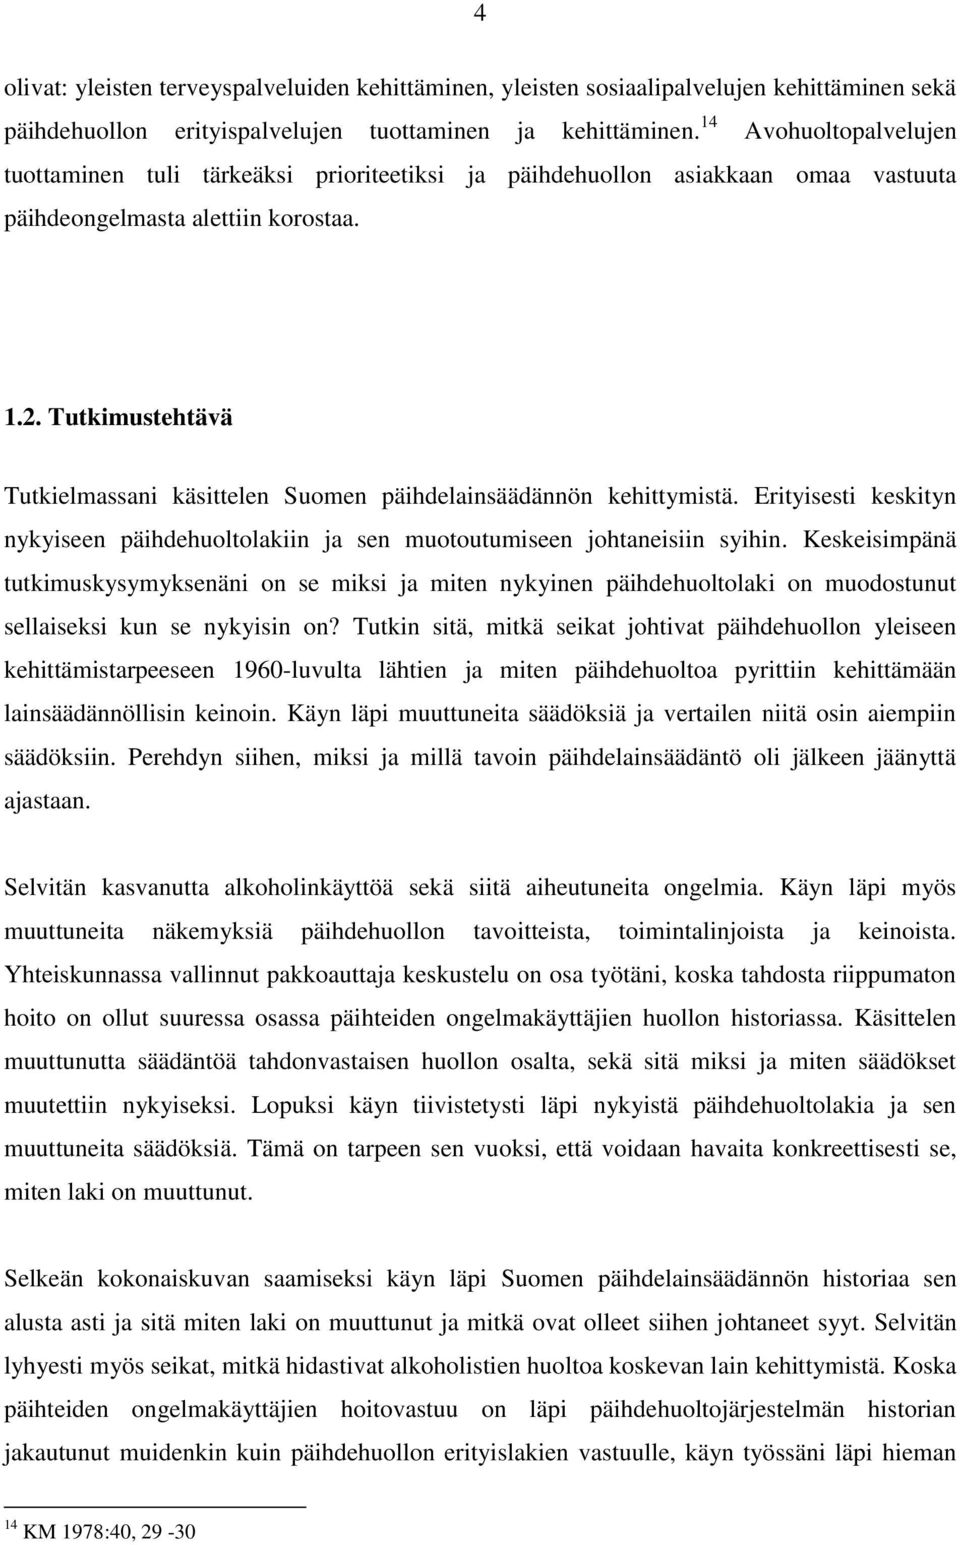 Tutkimustehtävä Tutkielmassani käsittelen Suomen päihdelainsäädännön kehittymistä. Erityisesti keskityn nykyiseen päihdehuoltolakiin ja sen muotoutumiseen johtaneisiin syihin.